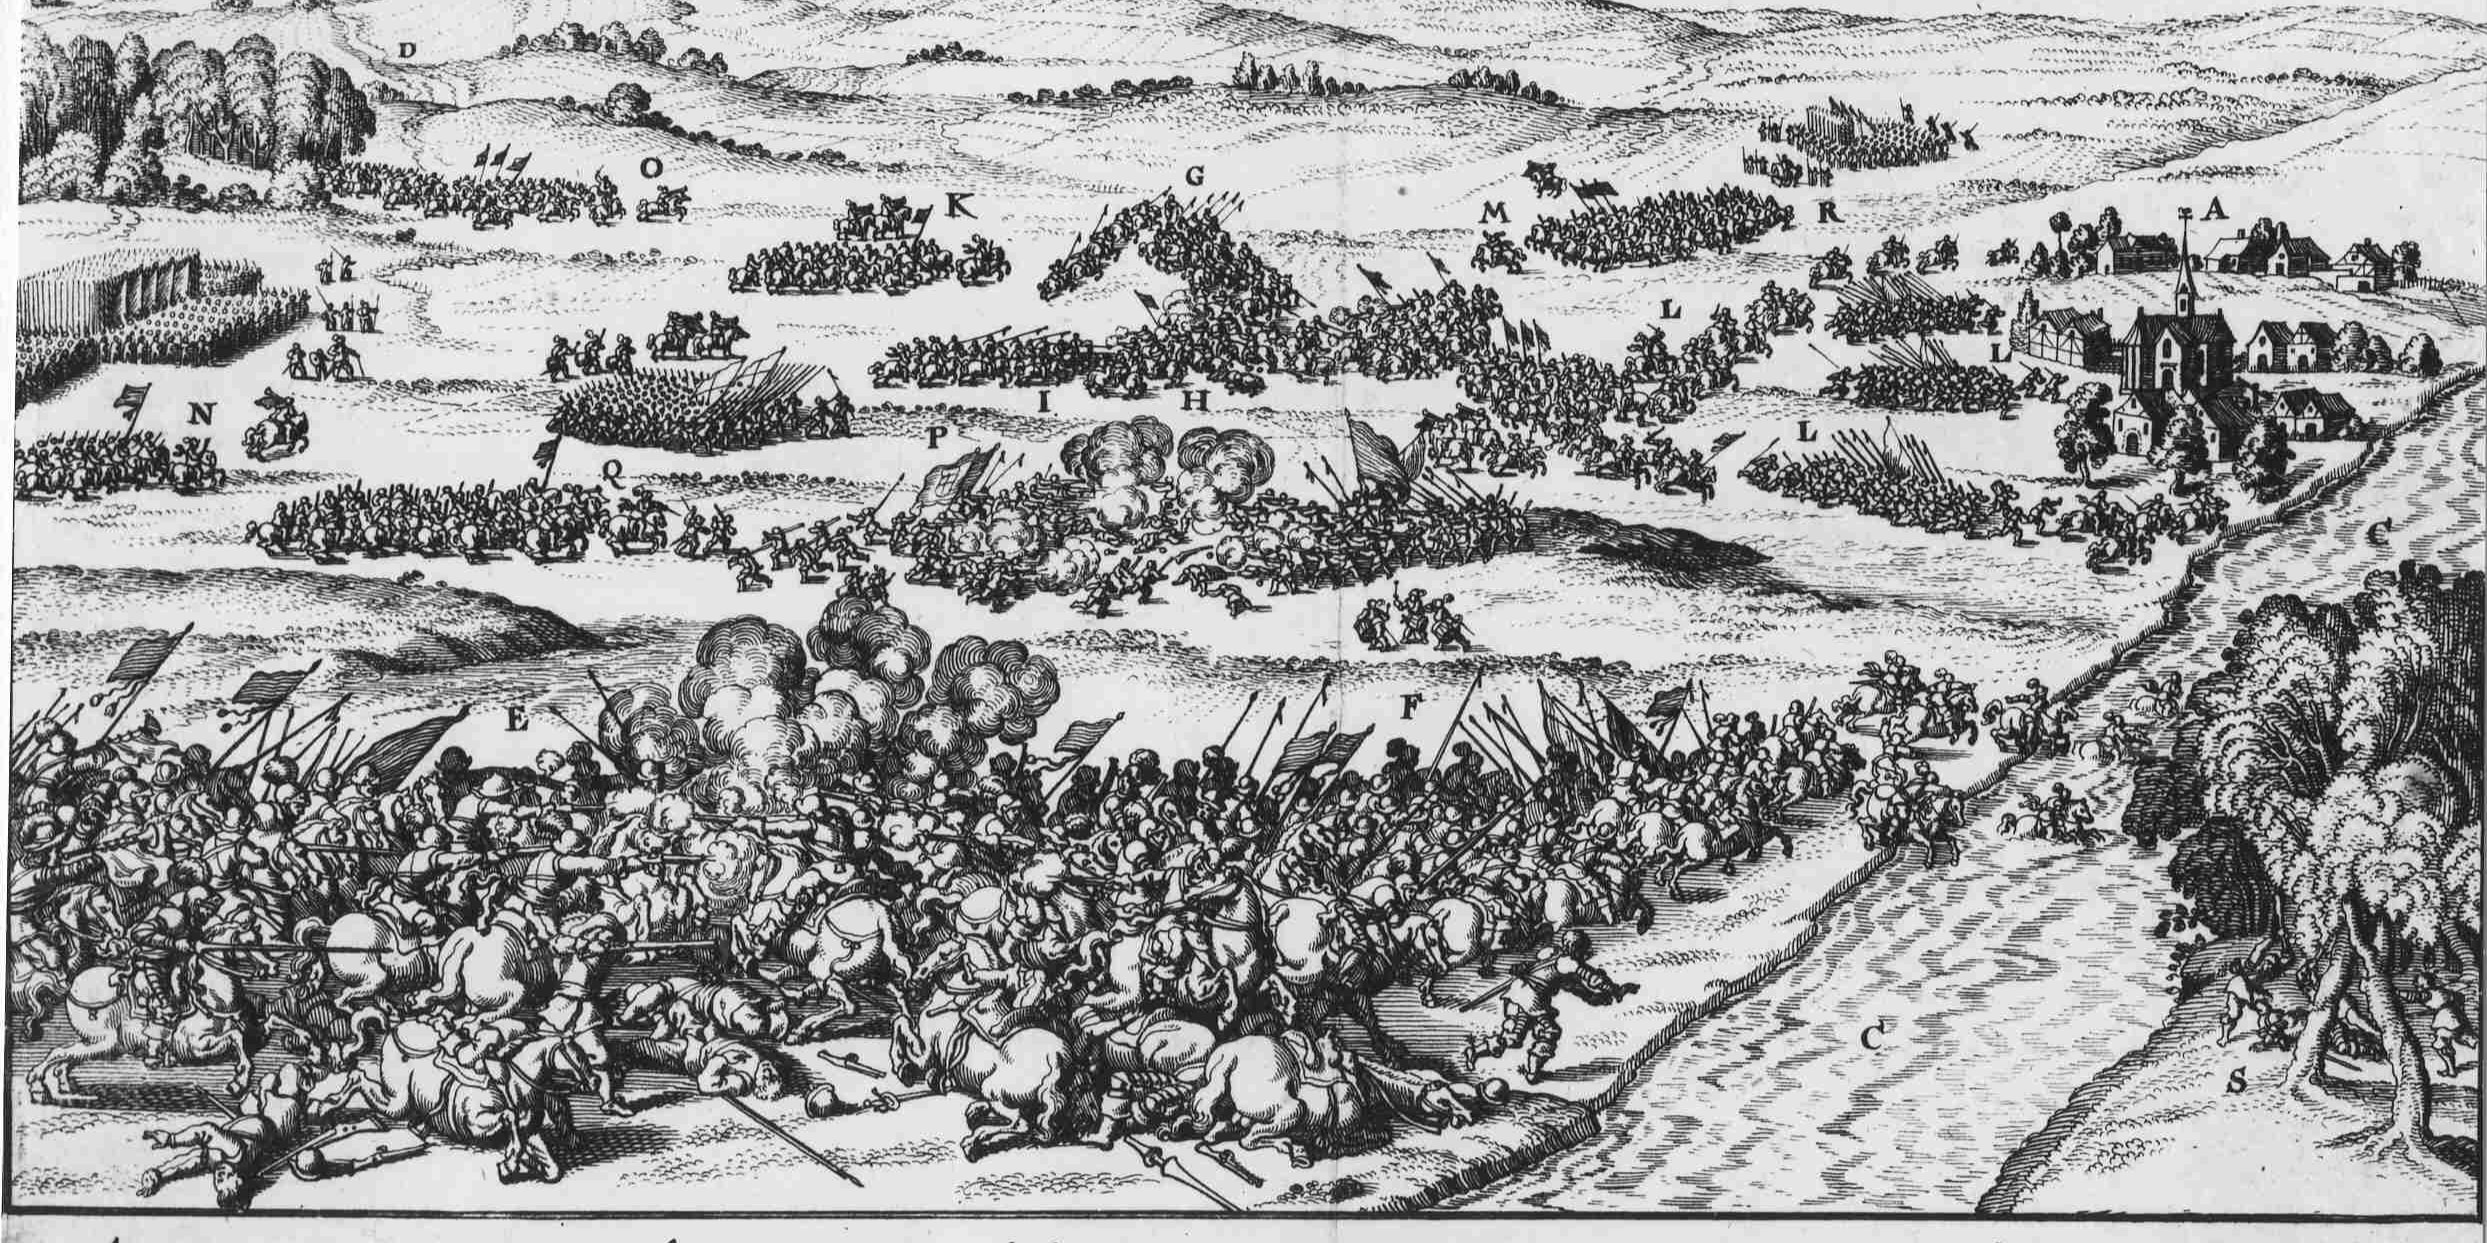 Historische tekening van de slag op de Mookerheide waarop te zien is hoe verschillende legereenheden op elkaar in vechten.   